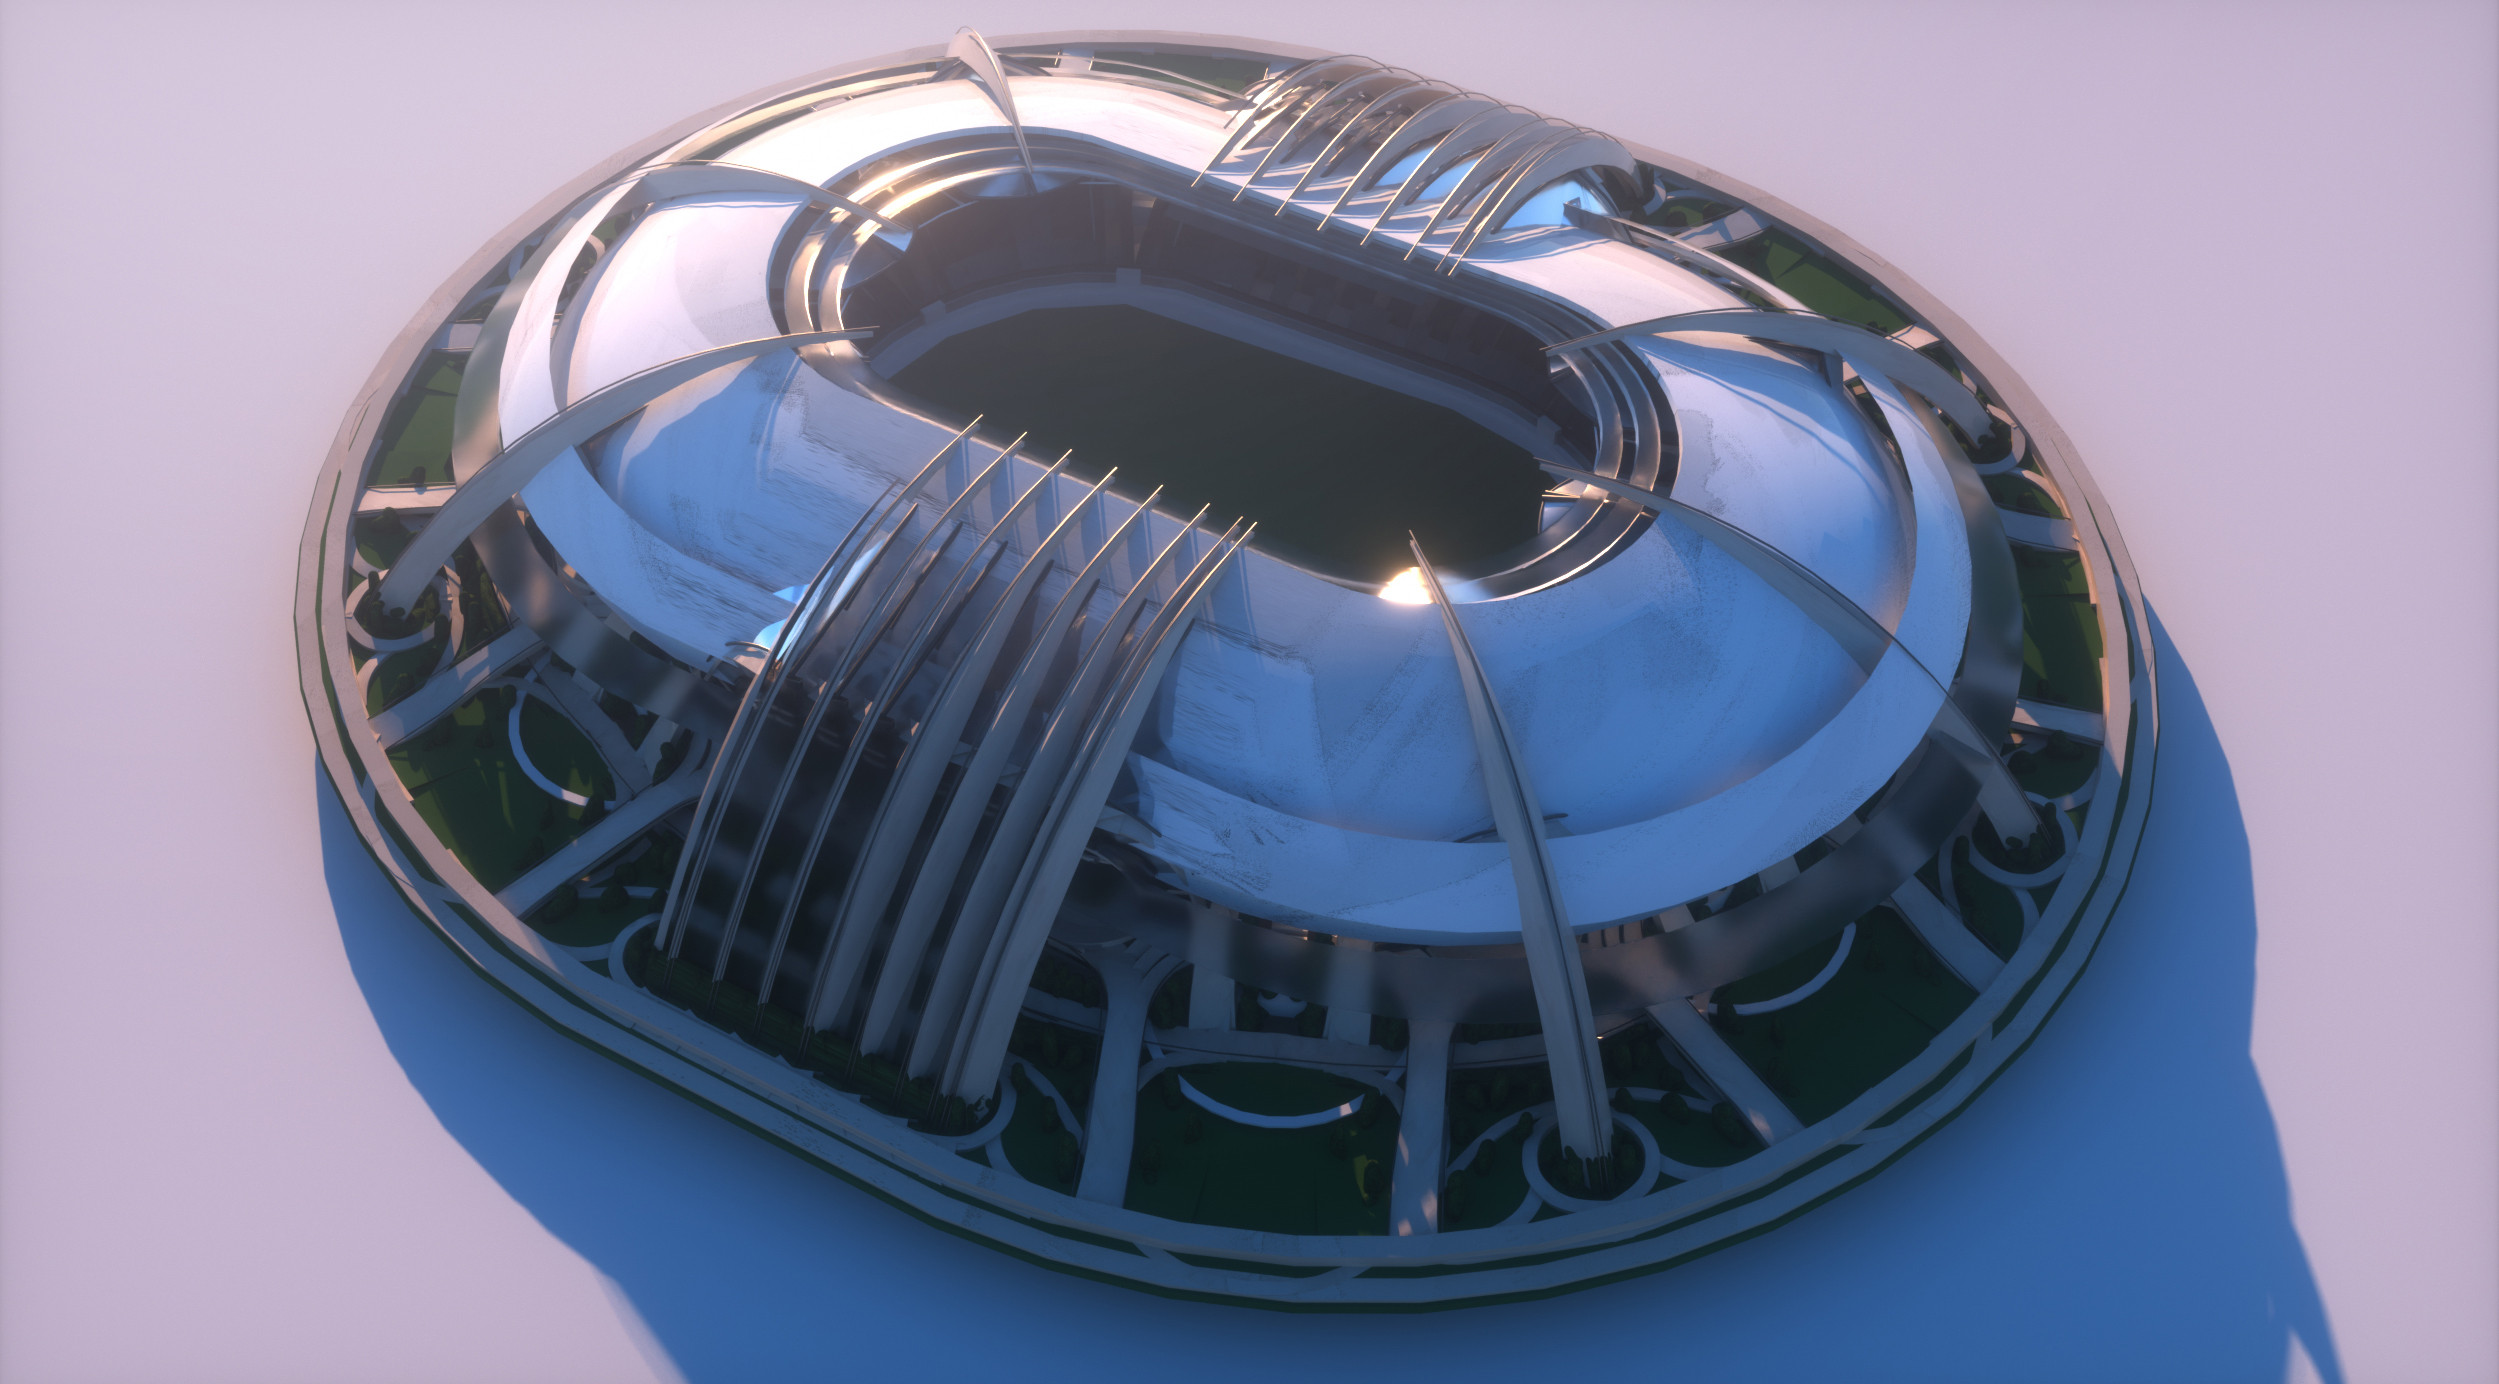 Stadium concept